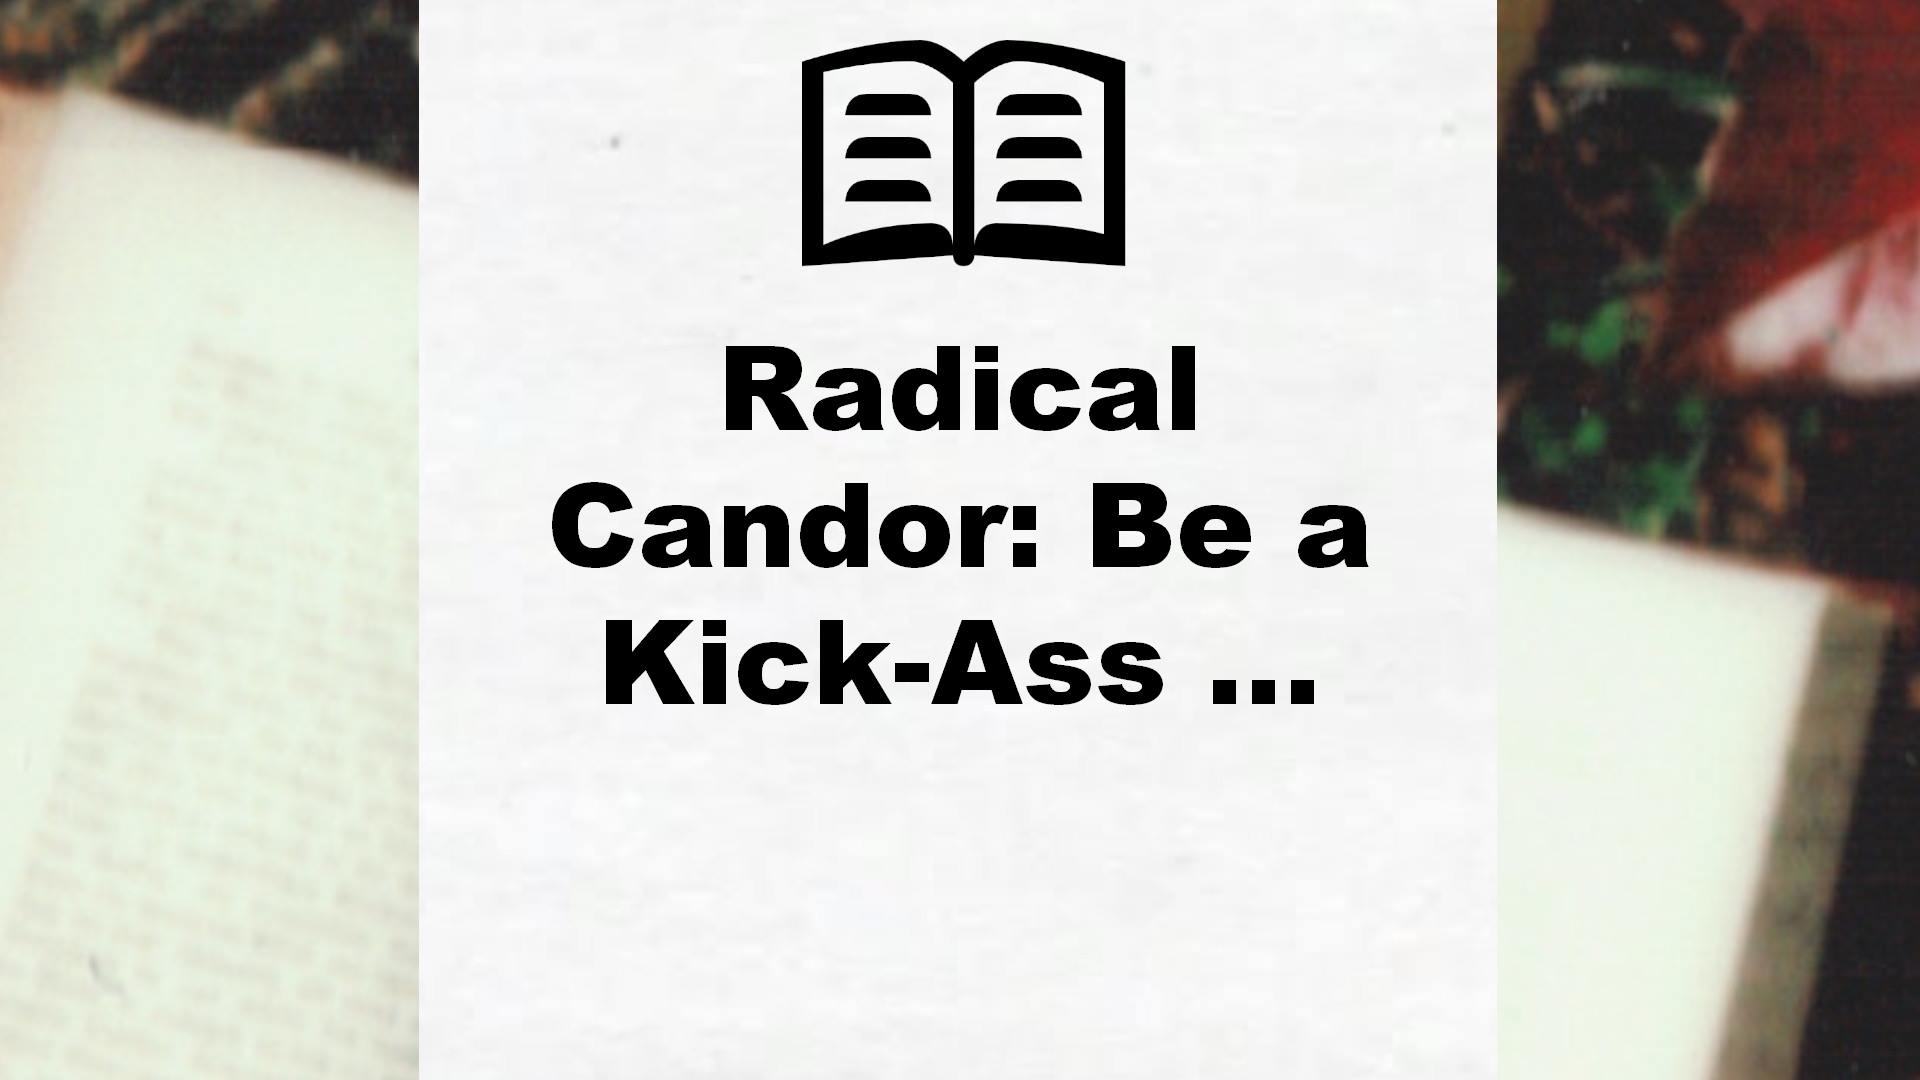 Radical Candor: Be a Kick-Ass … – Critique